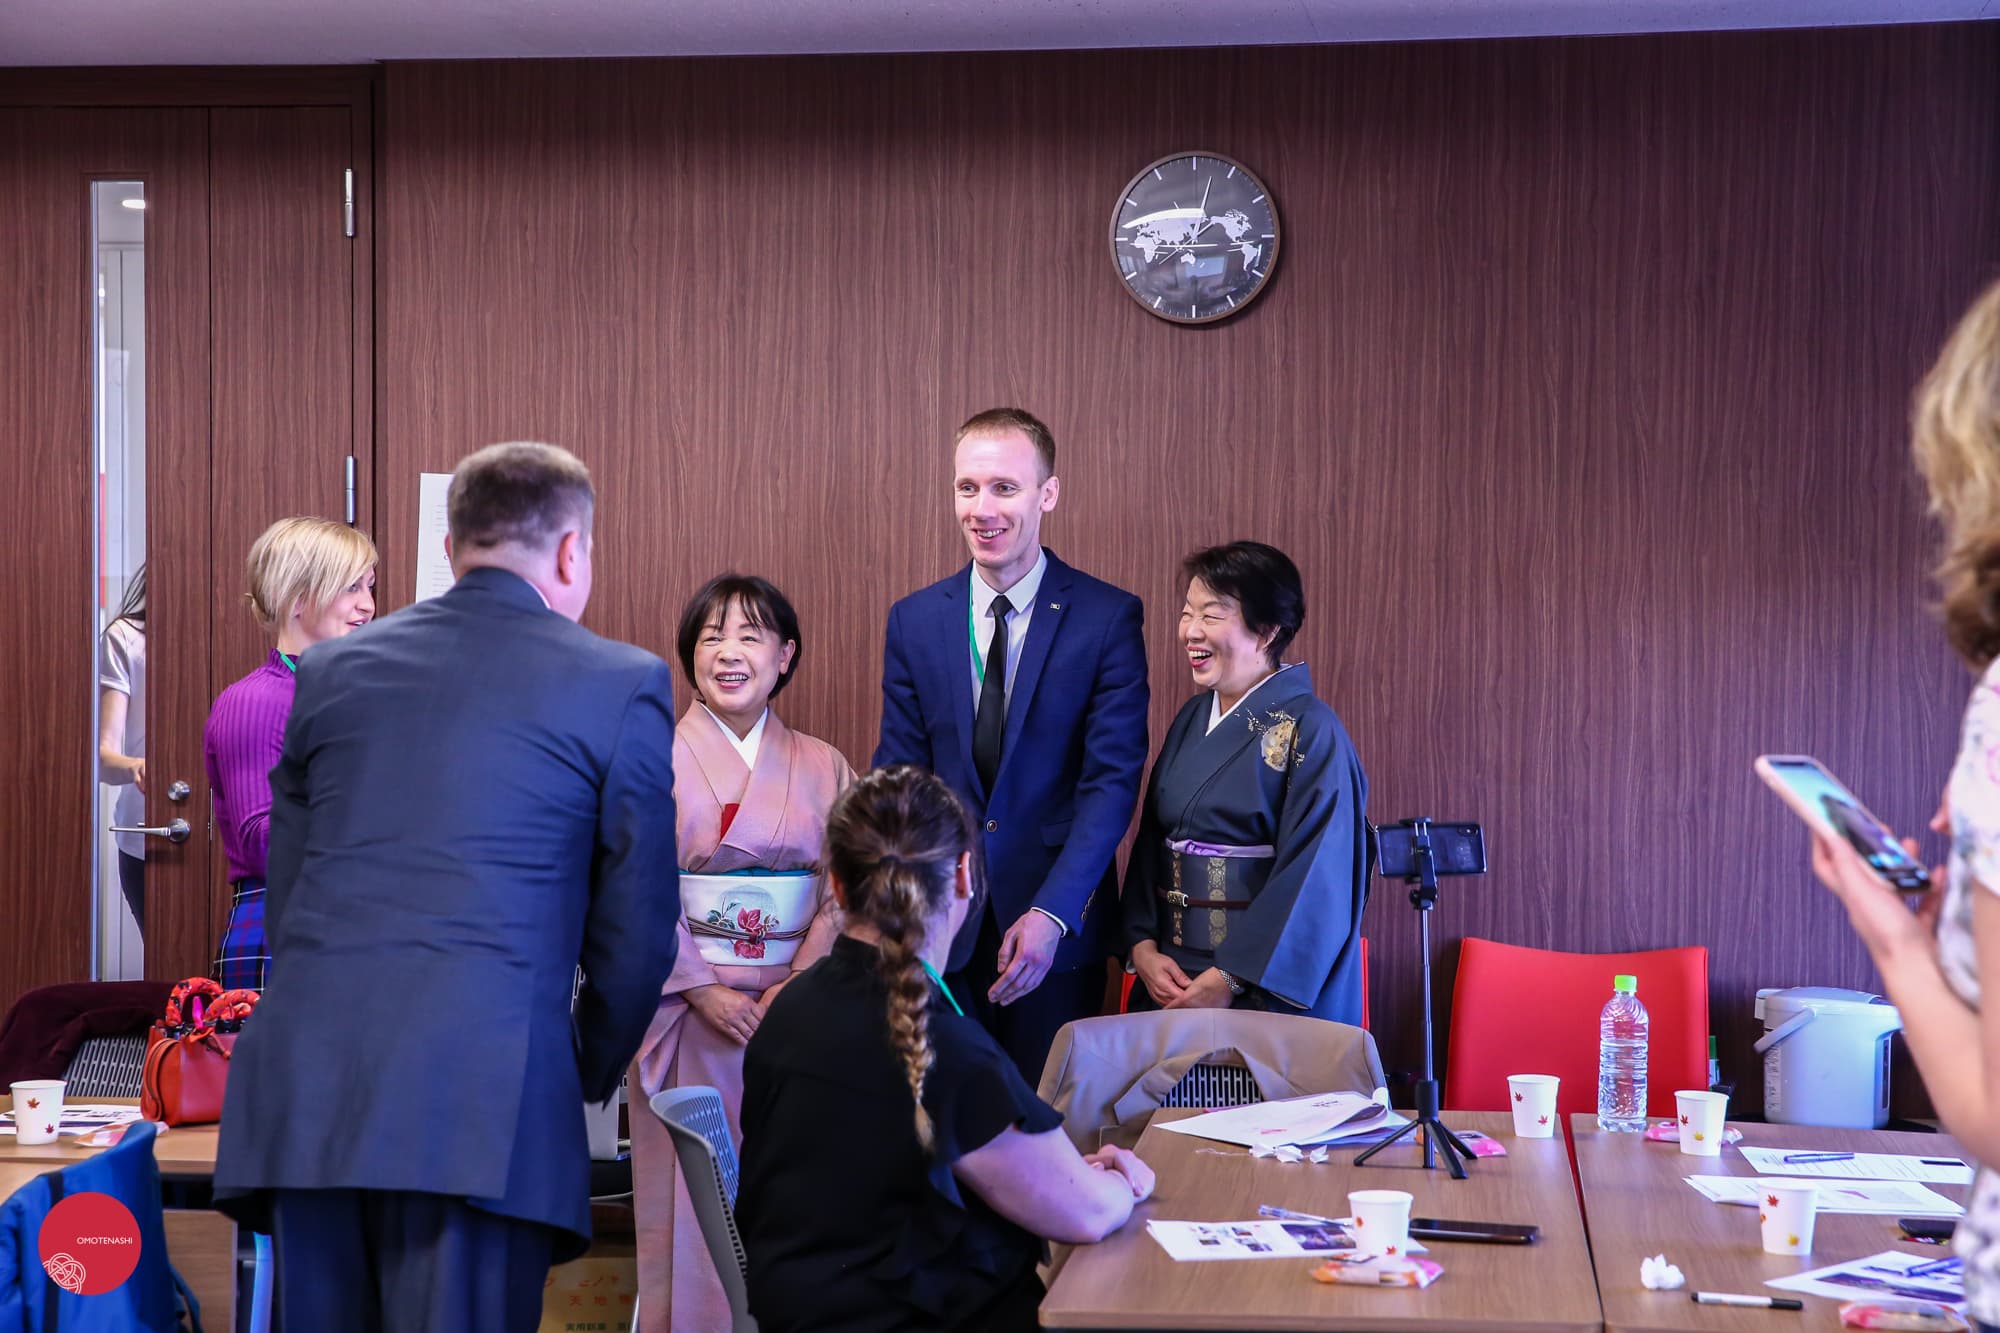 外務省 日本センター事業 日露経営人材養成、ロシア大統領プログラム「おもてなし研修」